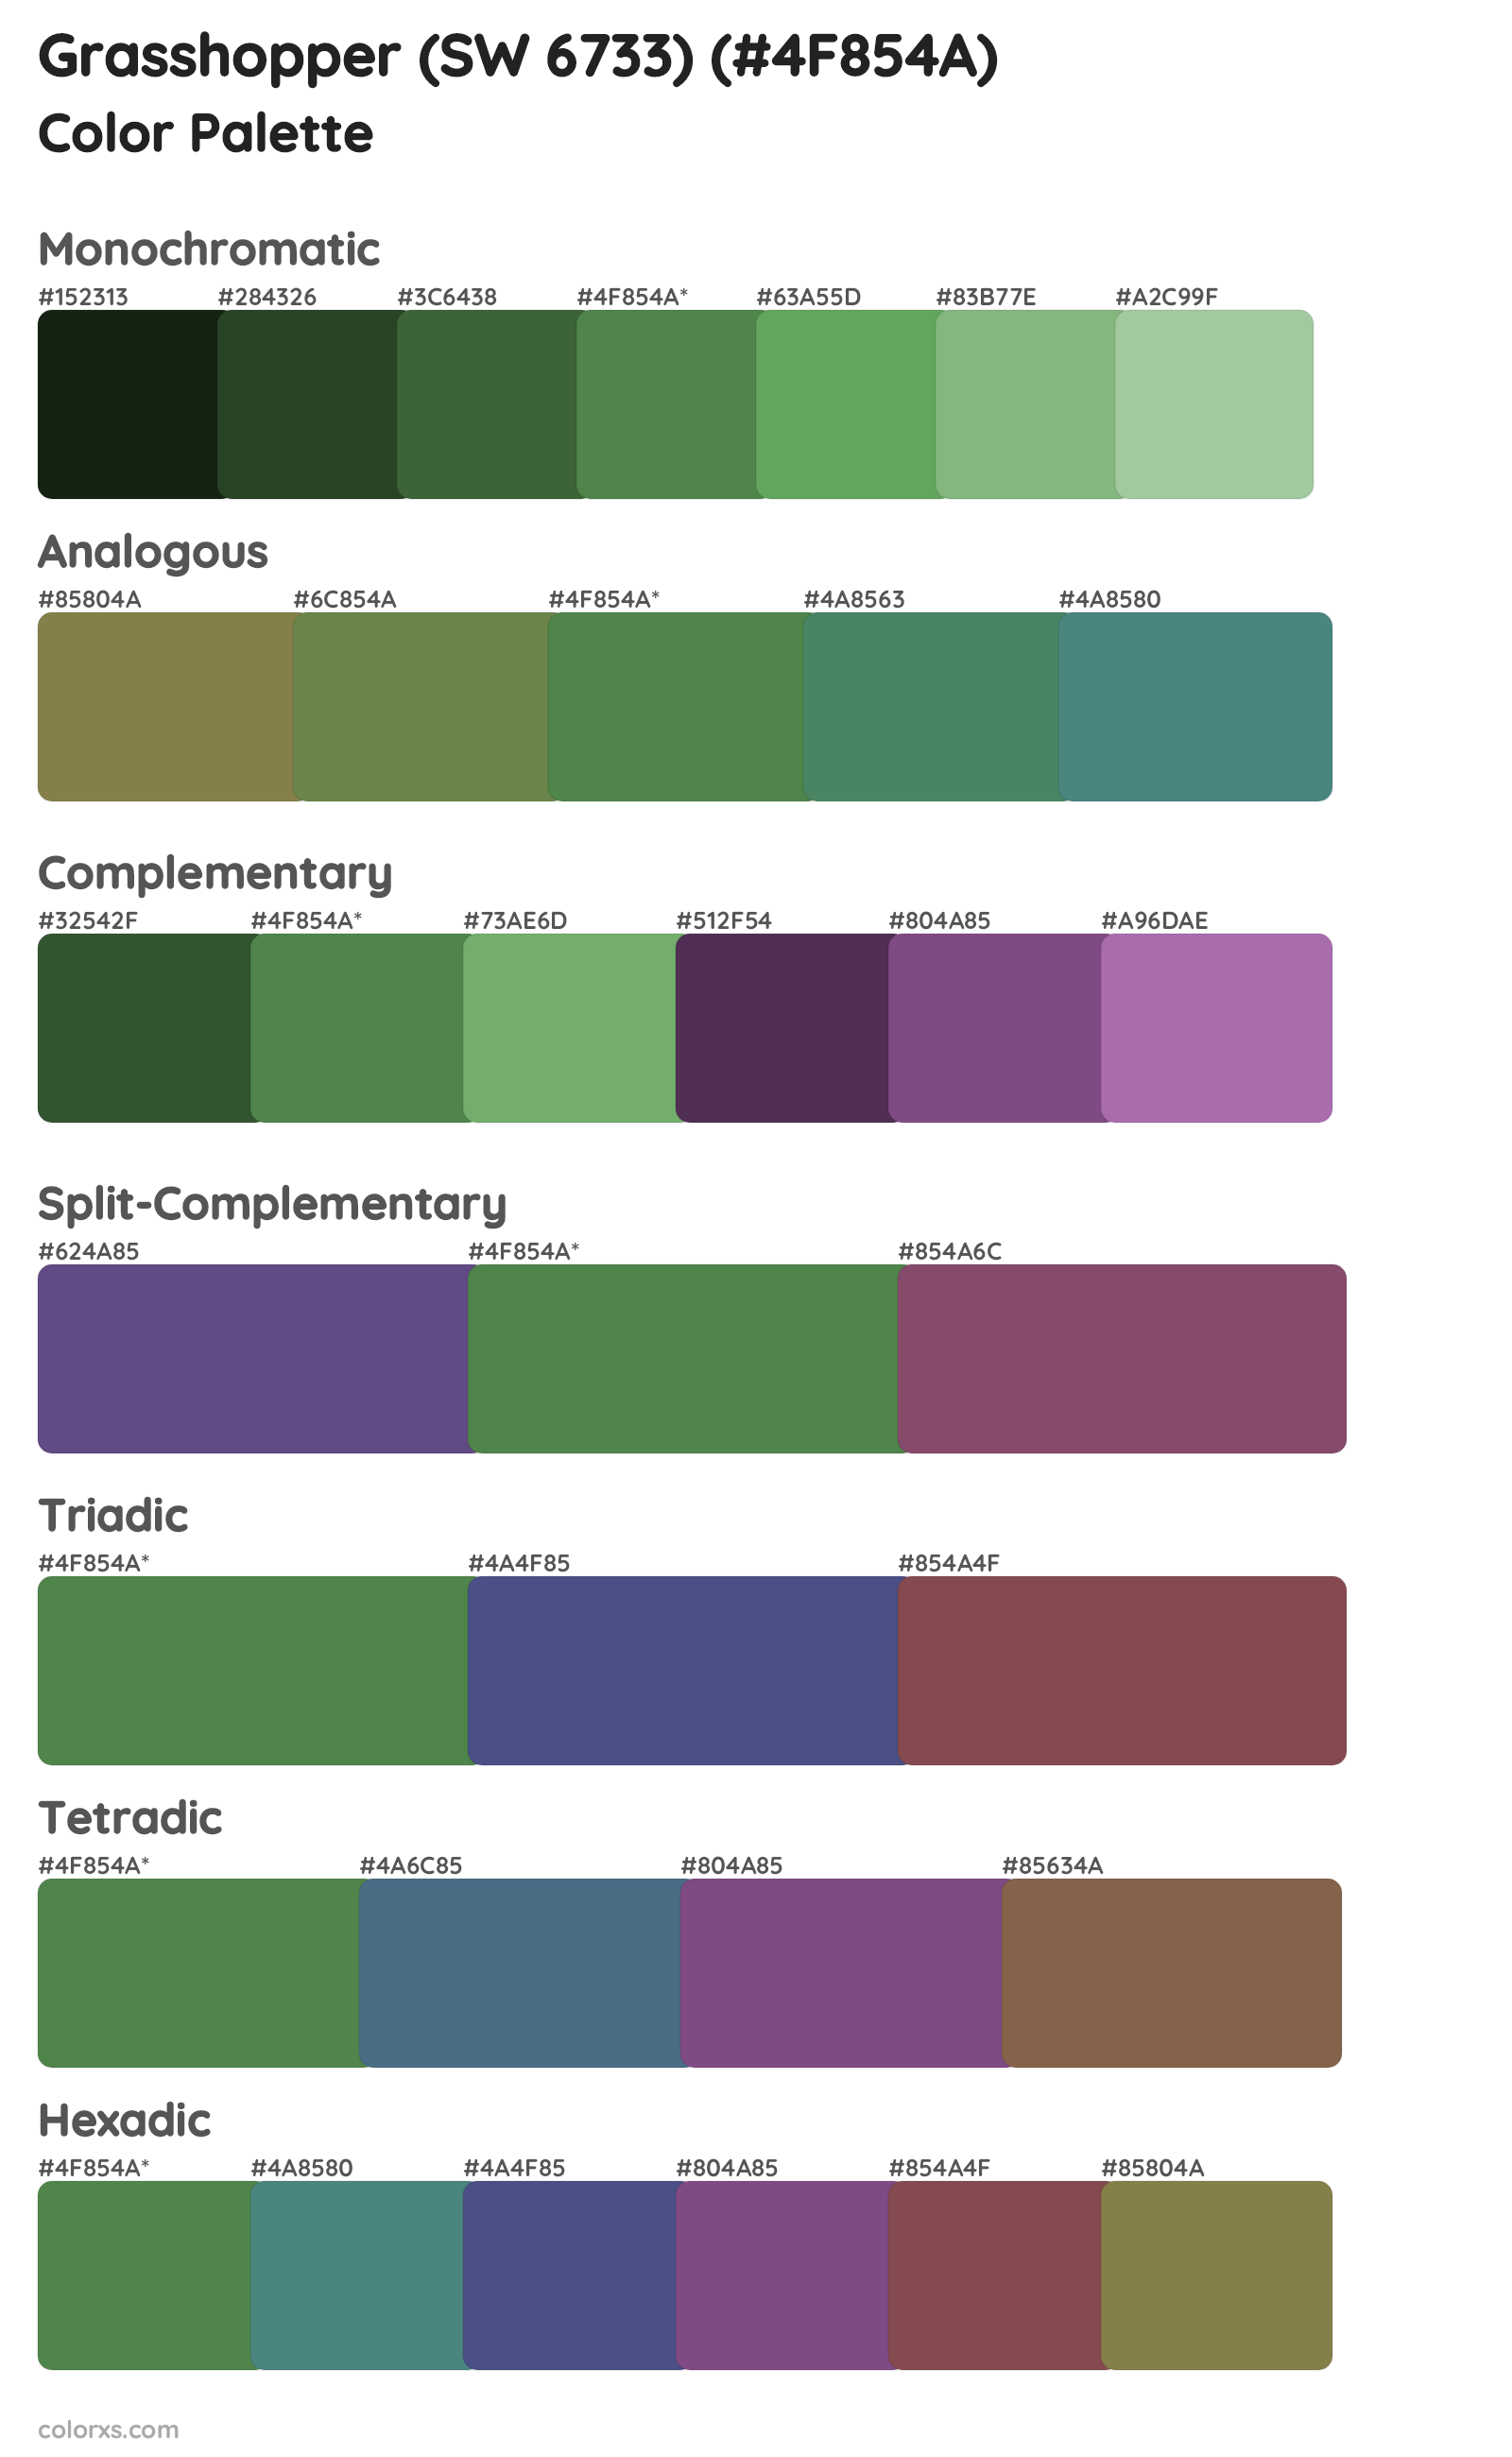 Grasshopper (SW 6733) Color Scheme Palettes